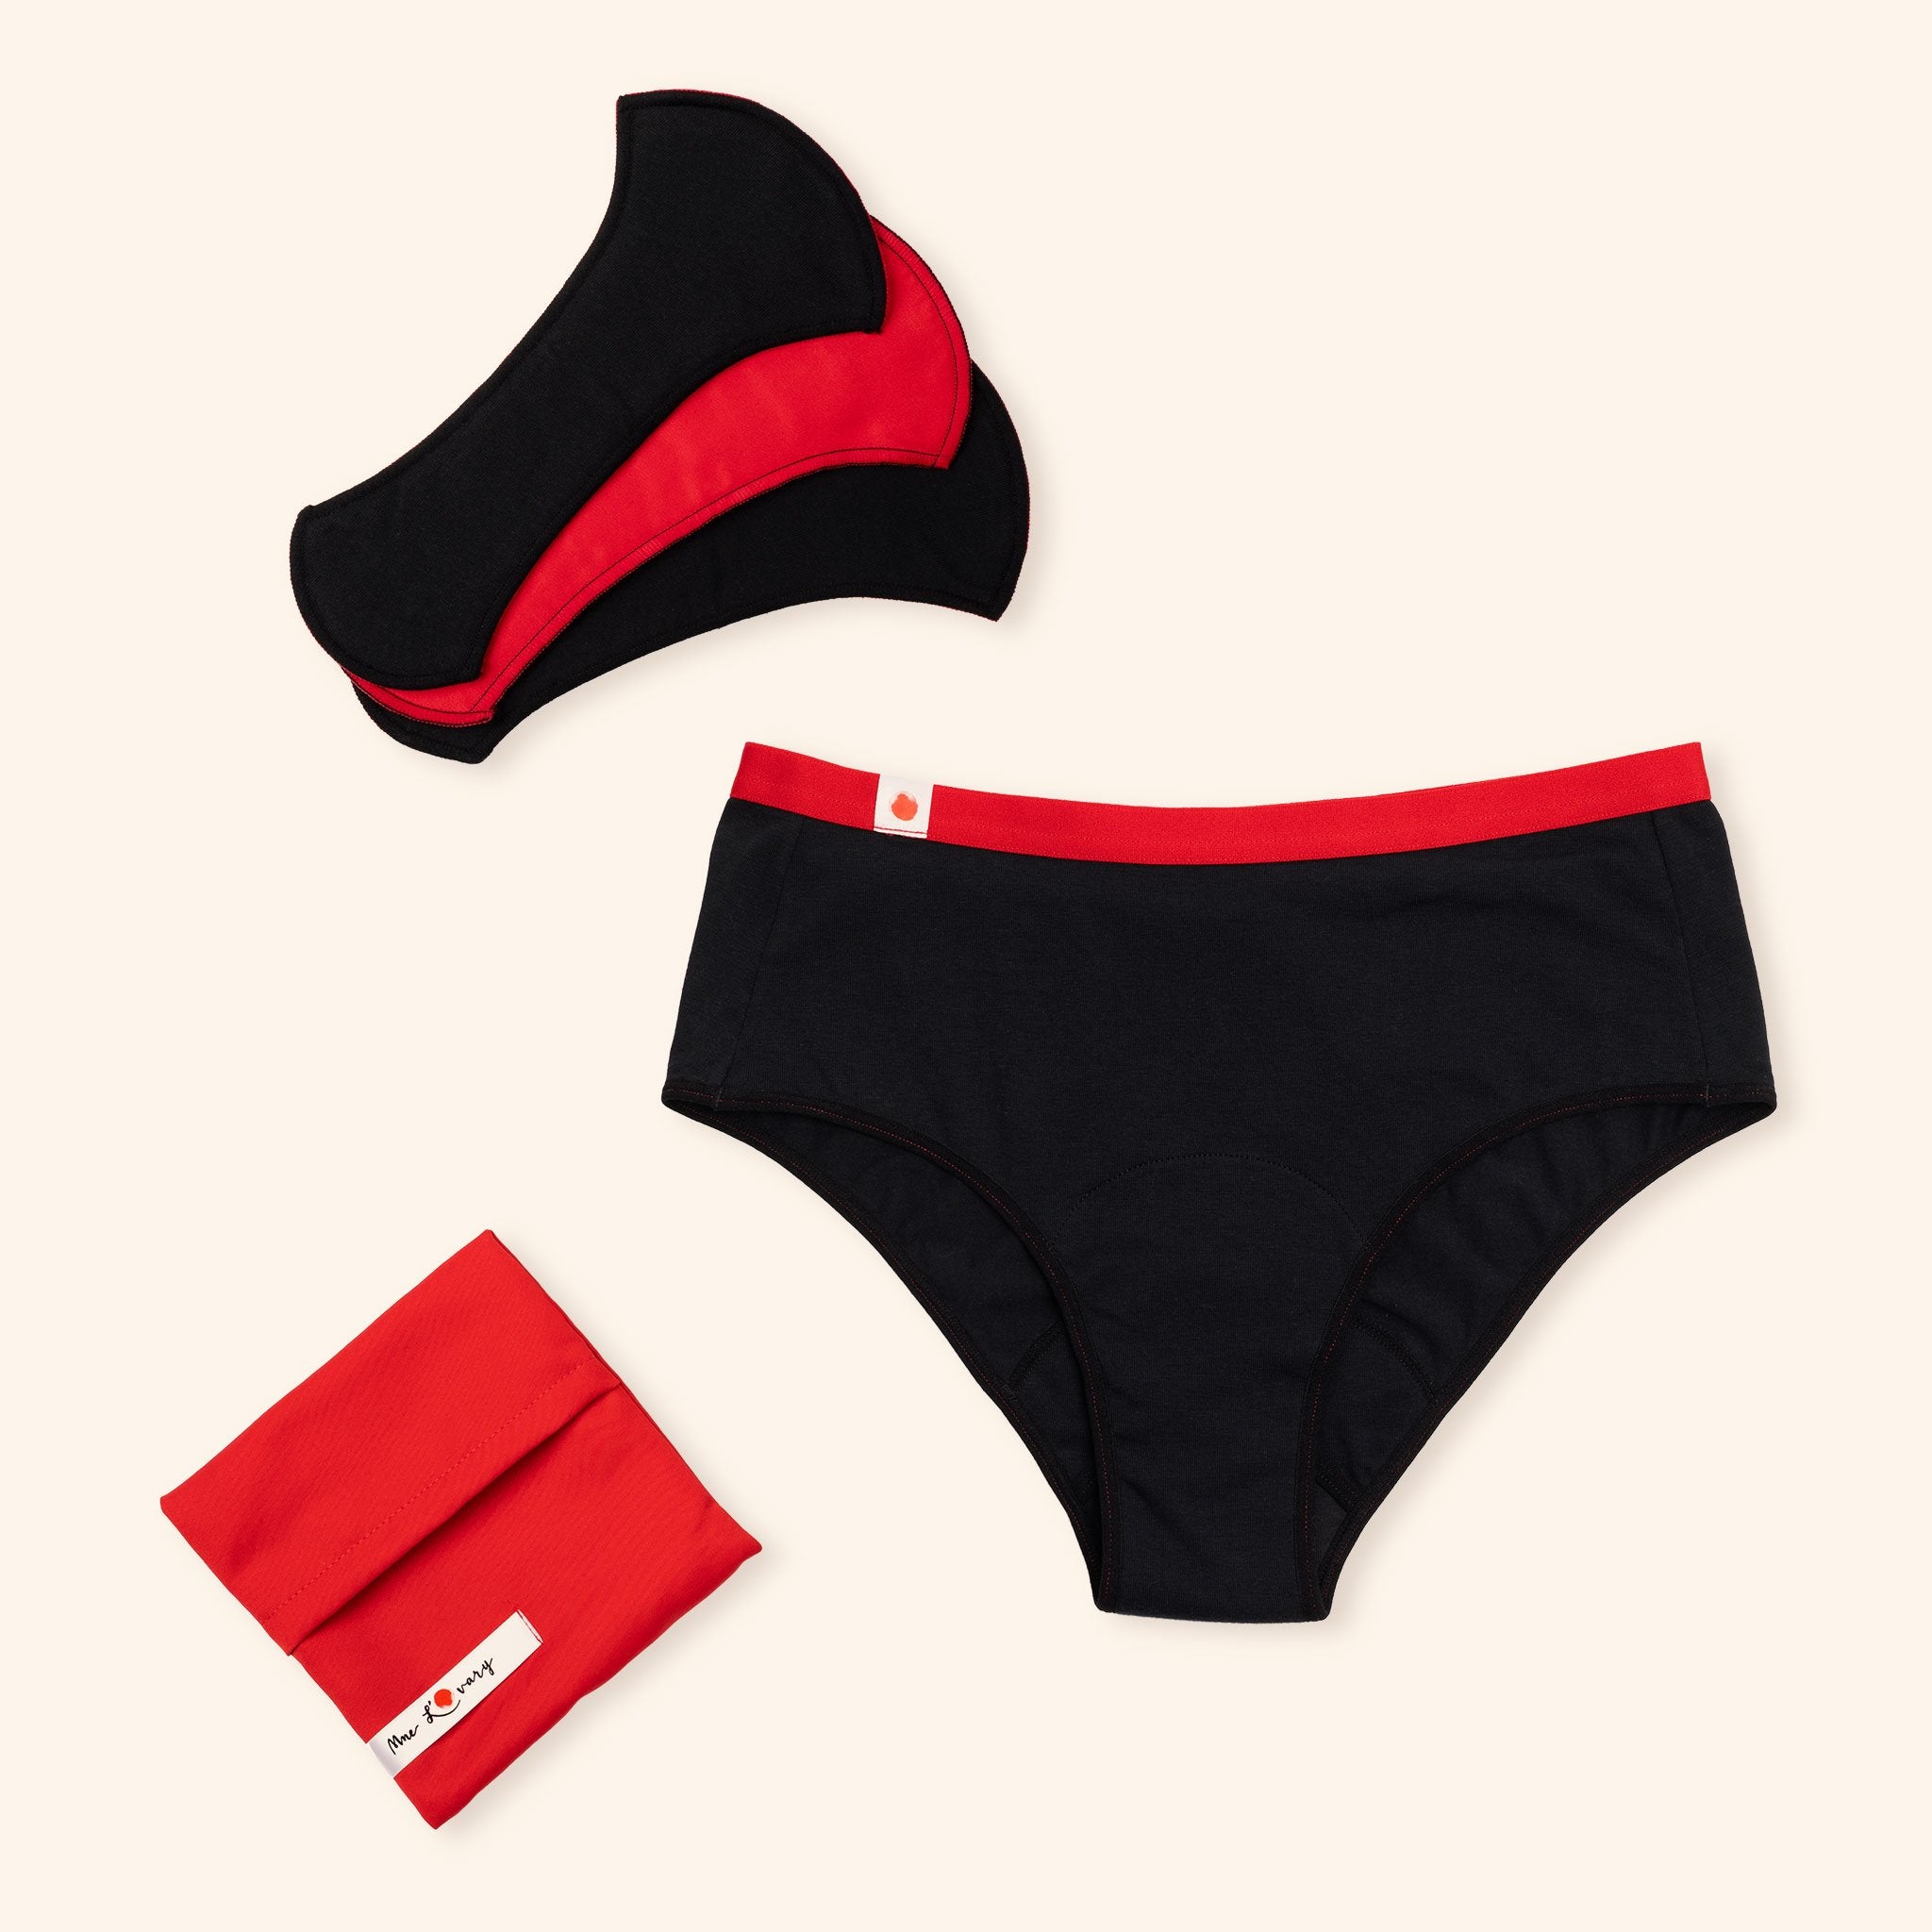 Highty ✦ 3-in-1 Period Underwear